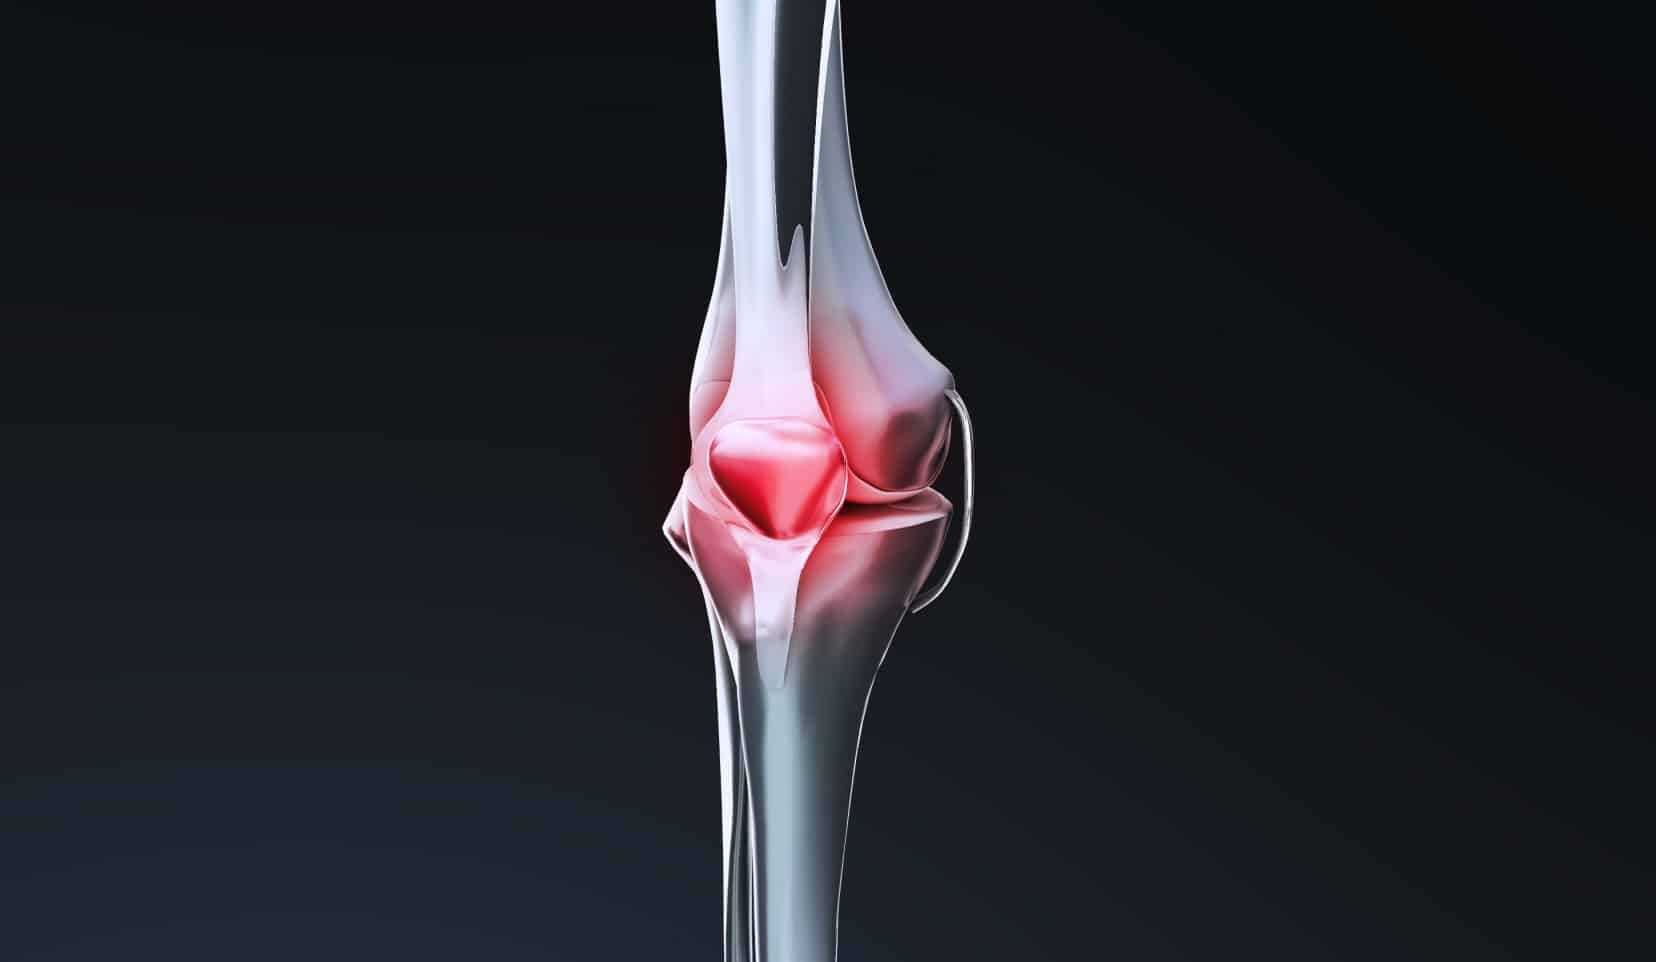 Entorse du genou : cause et traitement | spécialiste du genou | Dr Polle | Bois-Guillaume